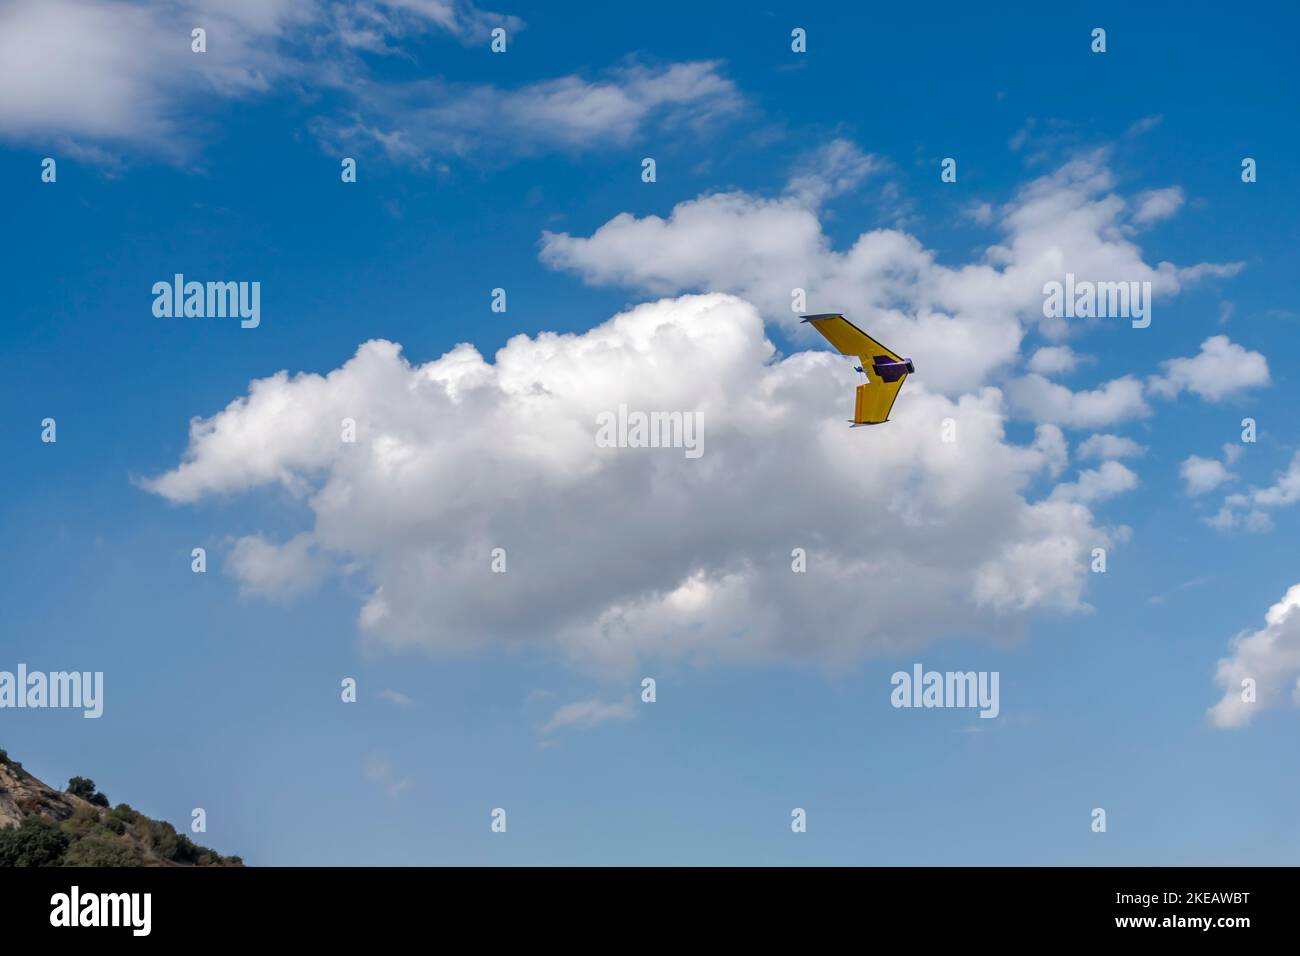 Il drone UAV dell'aeromobile controllato a distanza vola con un'elica, un aereo di colore giallo e viola. Vista ad angolo basso con cielo nuvoloso blu sullo sfondo Foto Stock